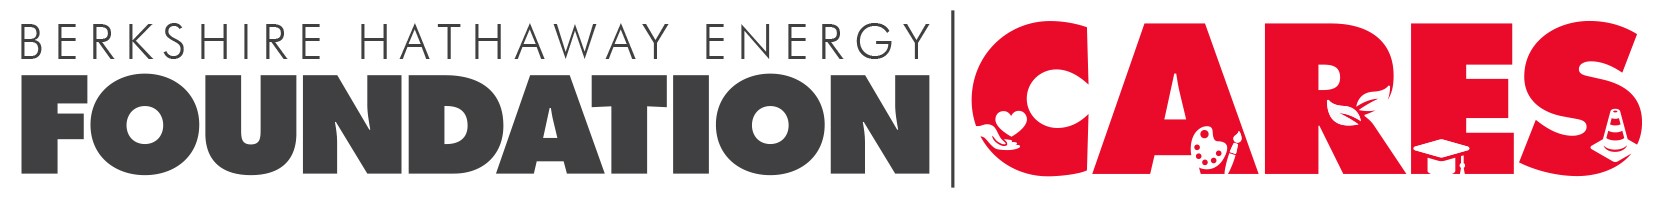 Hathaway Energy